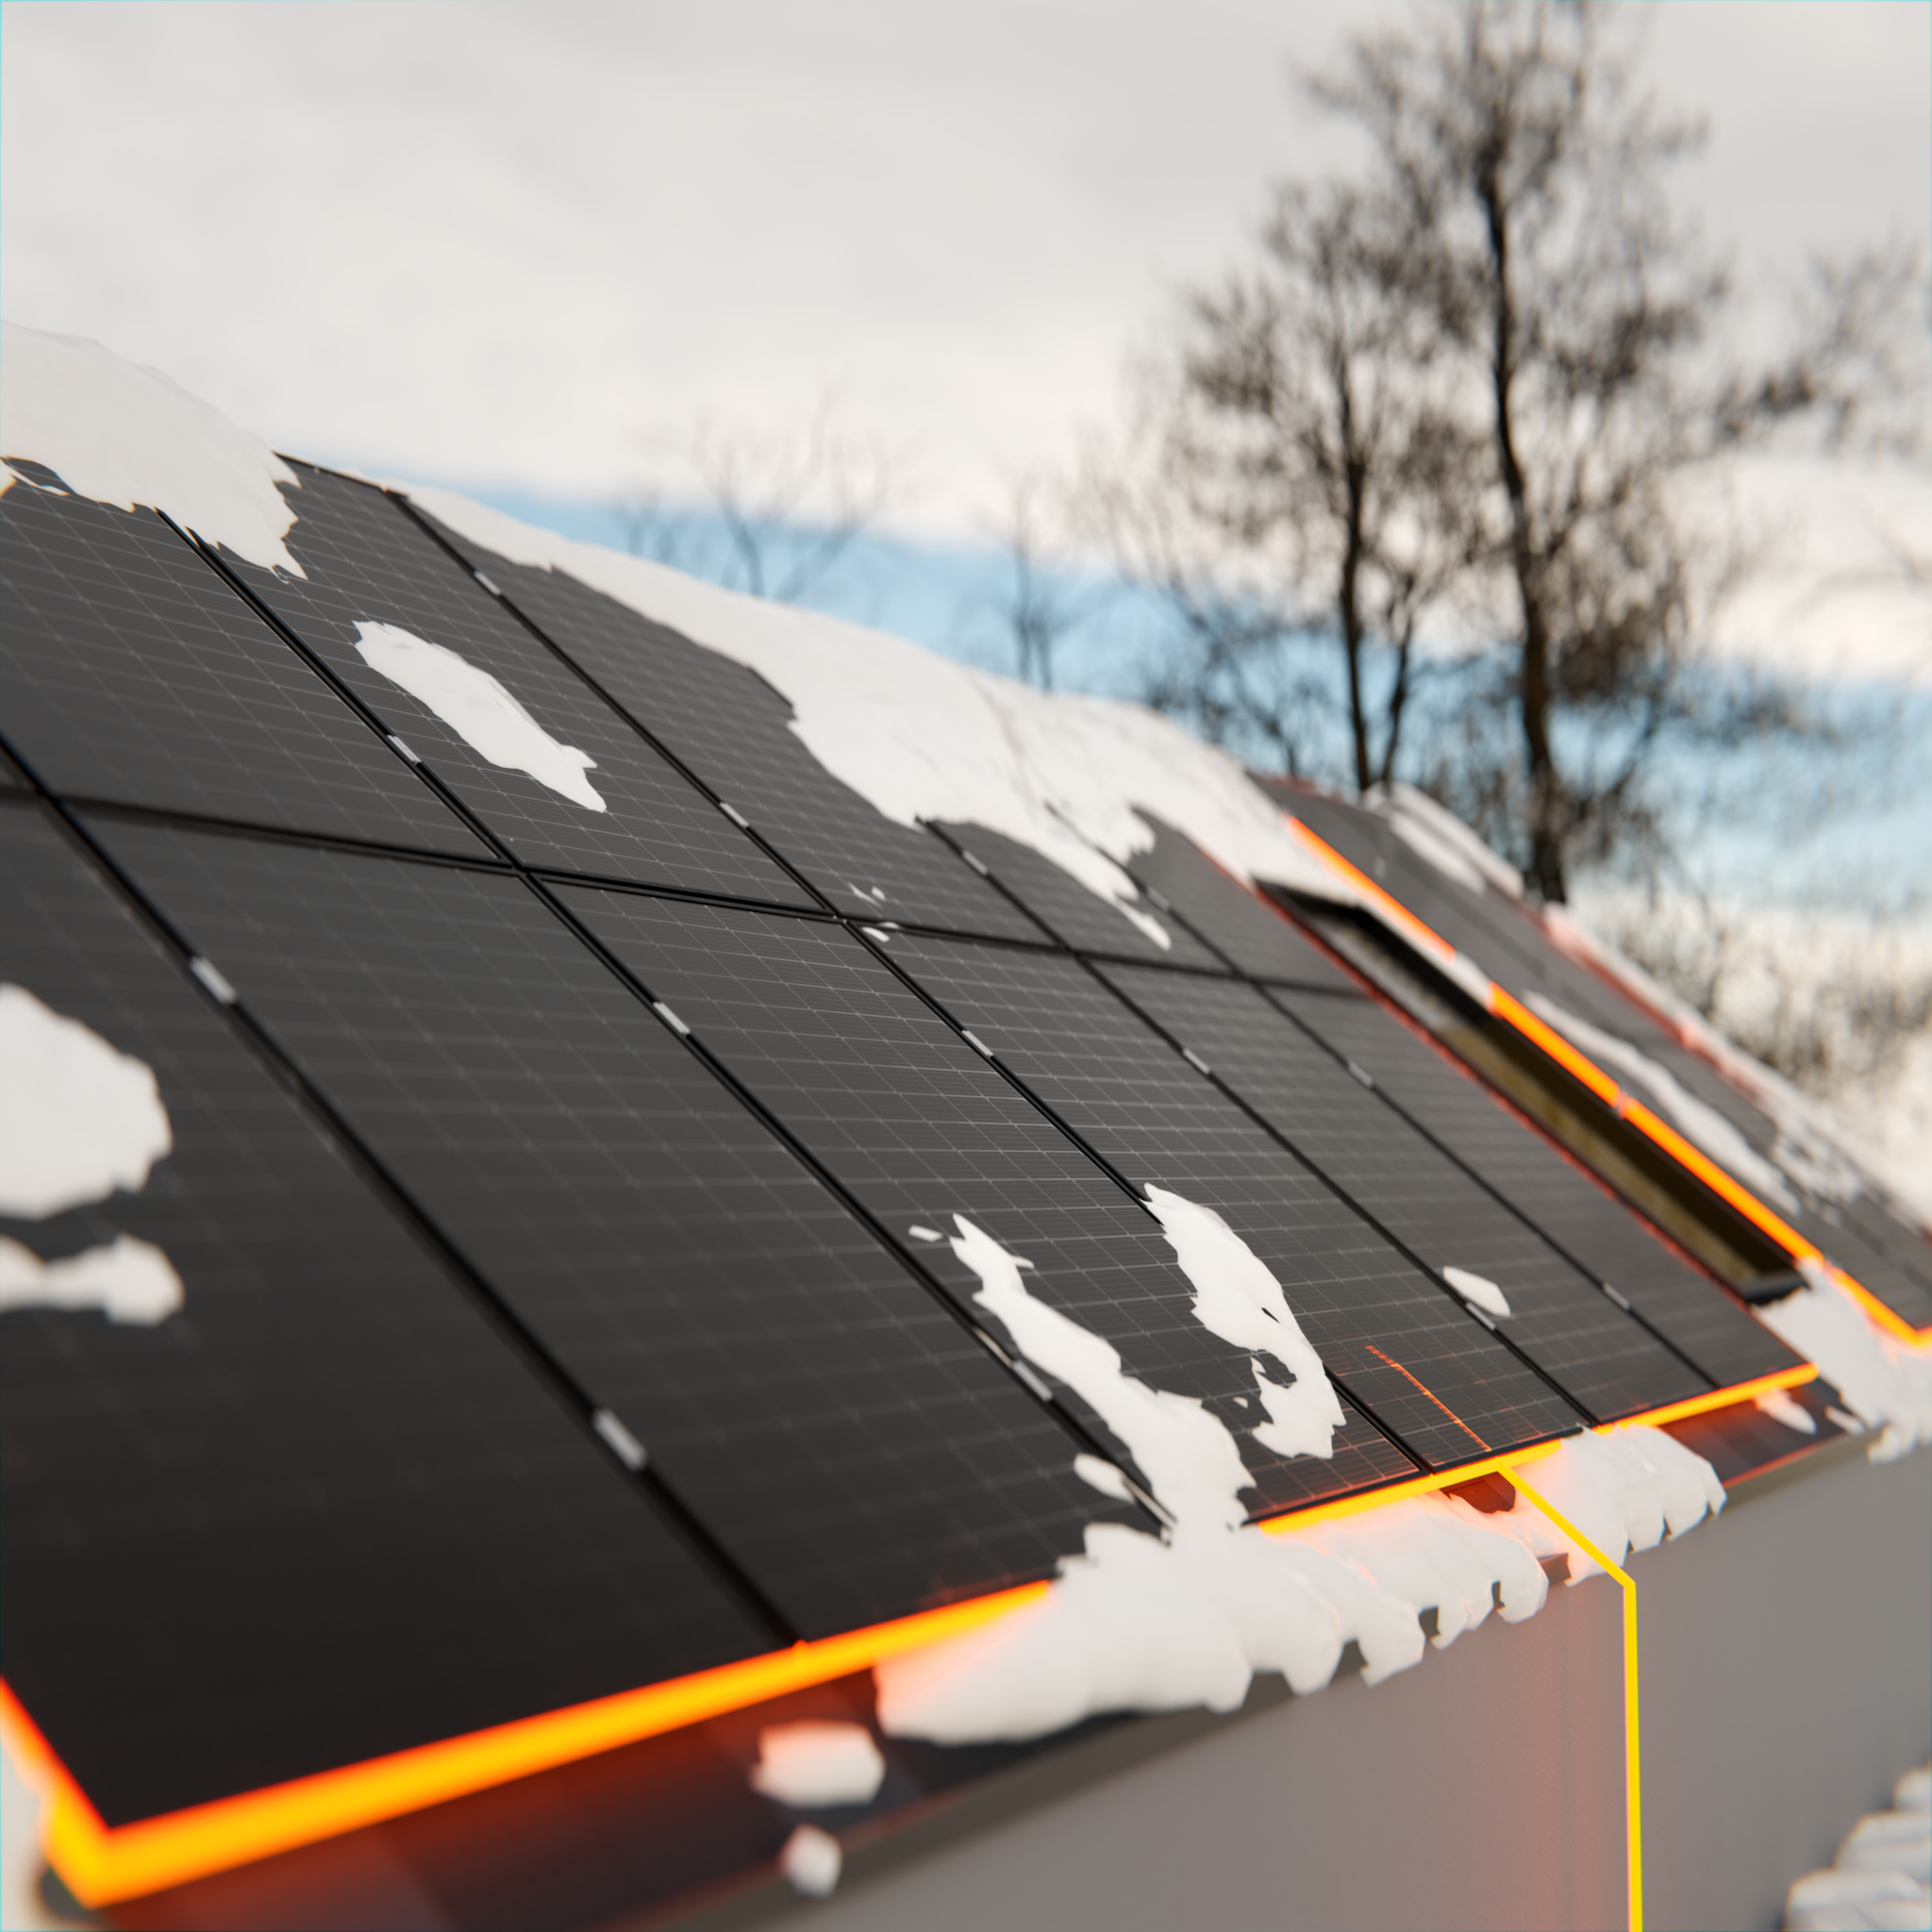 Hervorgehobene Solarplatten mit einer orangenen Umrandung